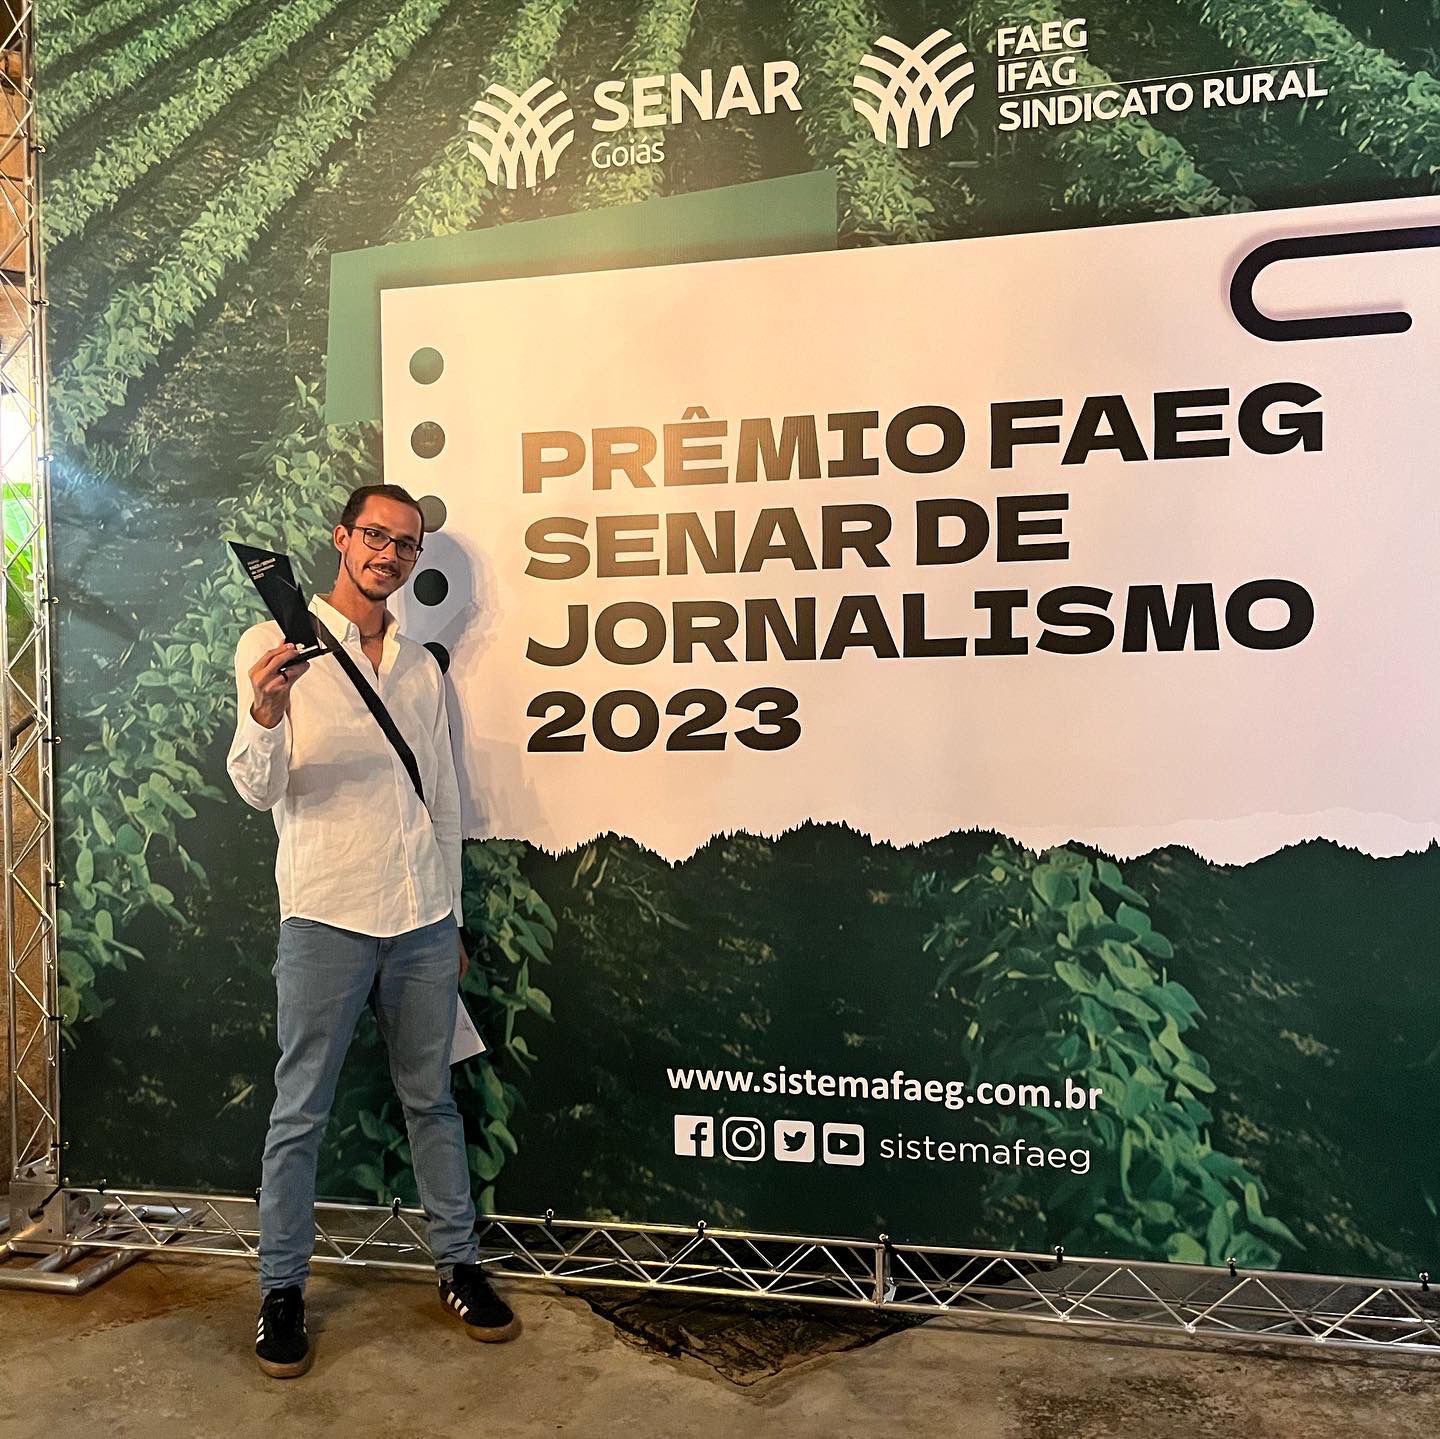 Osmam Martins Júnior, Repórter do Portal Serra Dourada fica em 3° lugar do Prêmio Faeg Senar de Jornalismo 2023